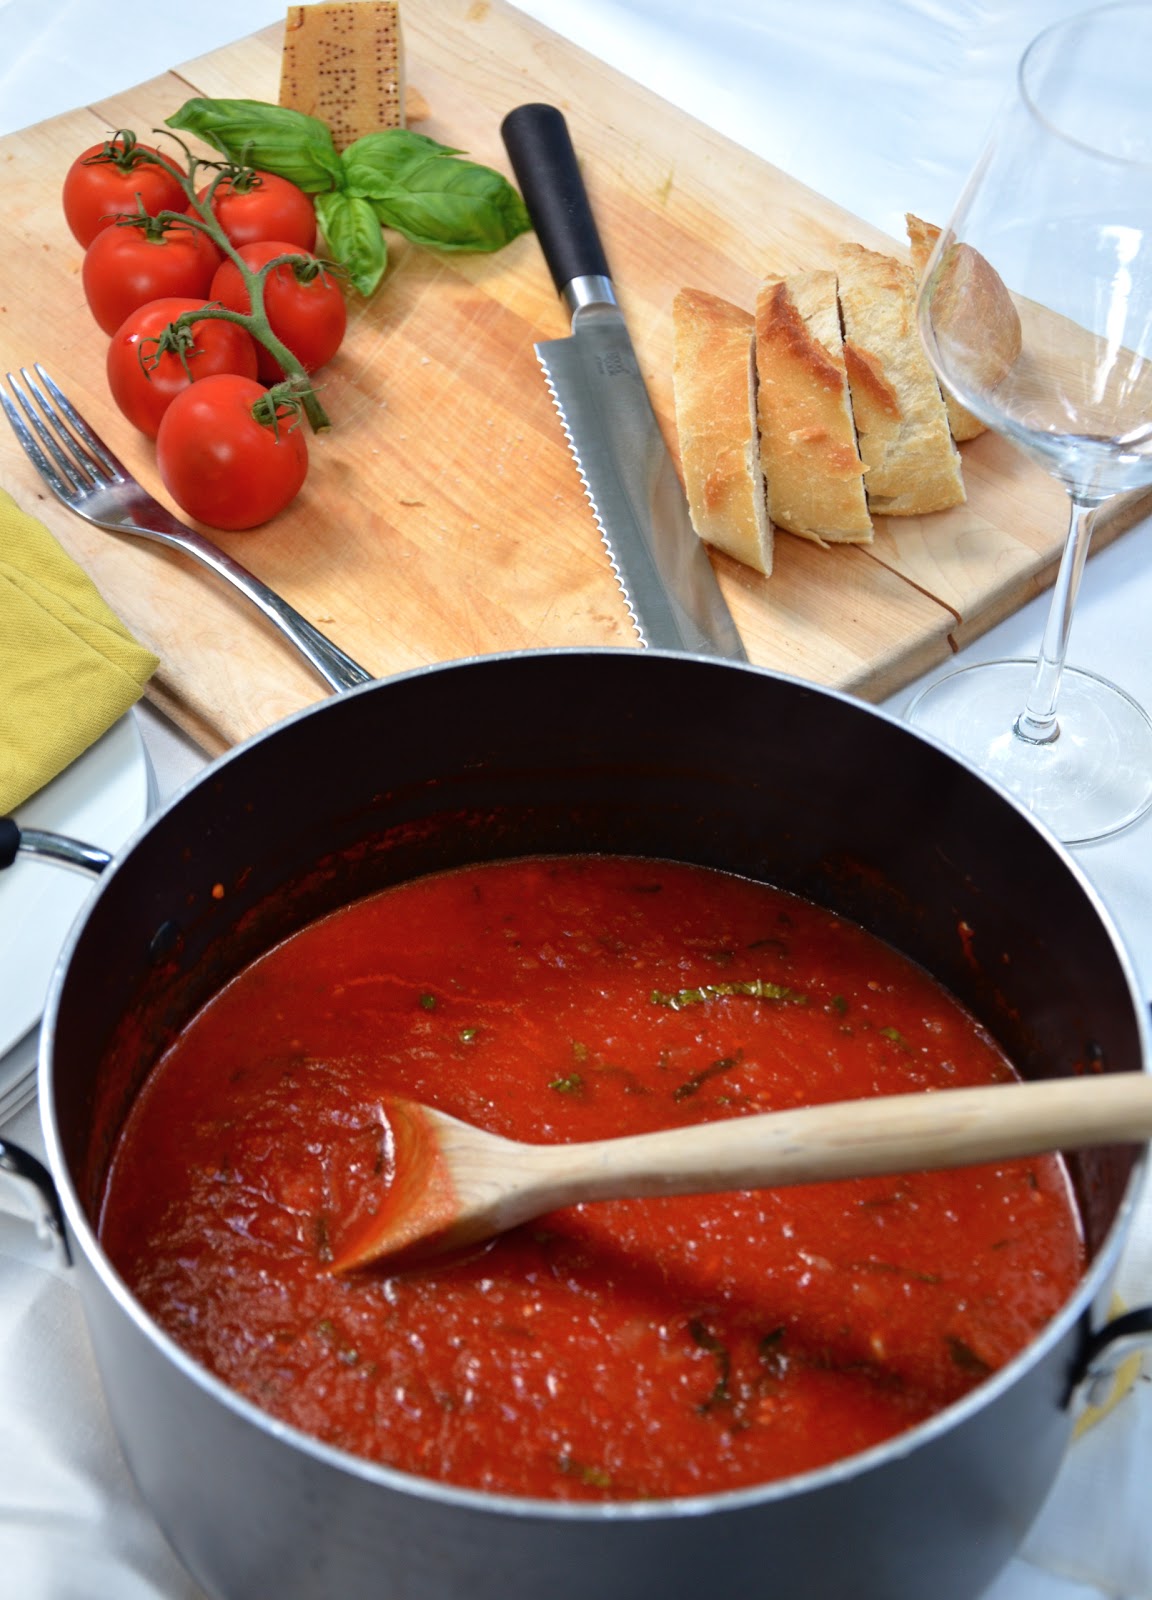 carlyklock: Authentic Italian Tomato Sauce